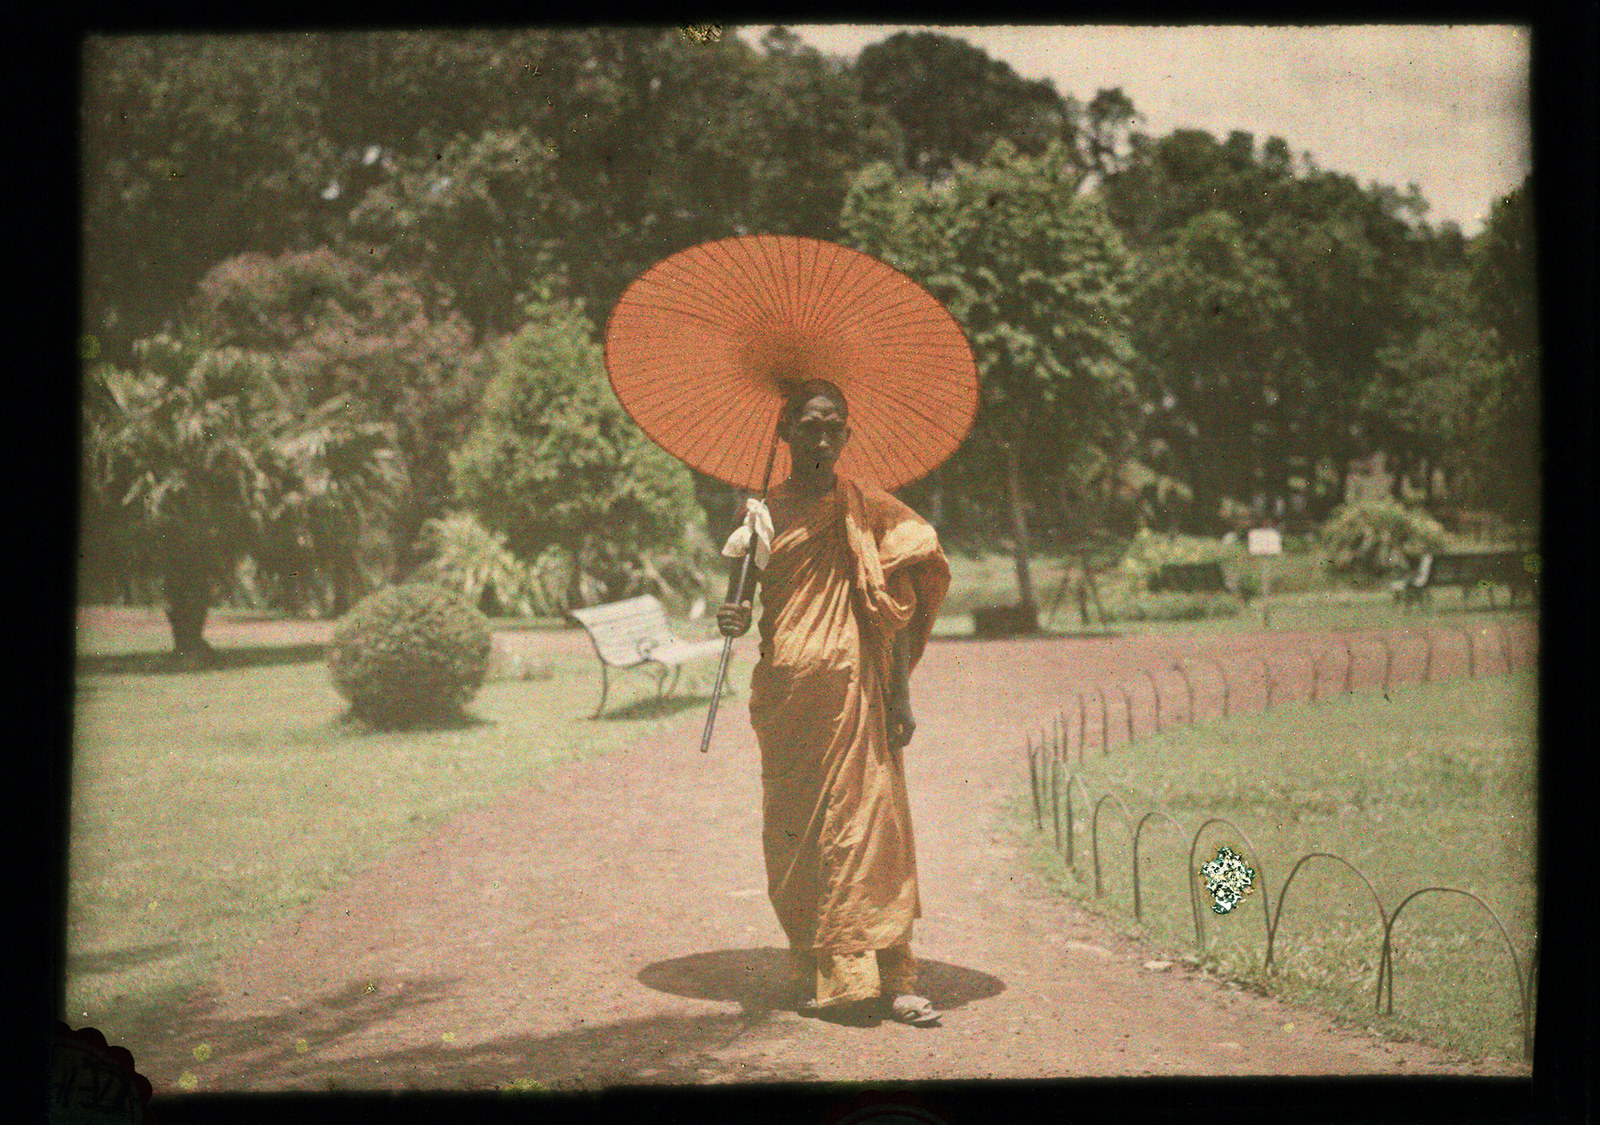 100年前の世界を カラーで見てみよう 世界最古のカラー写真23枚